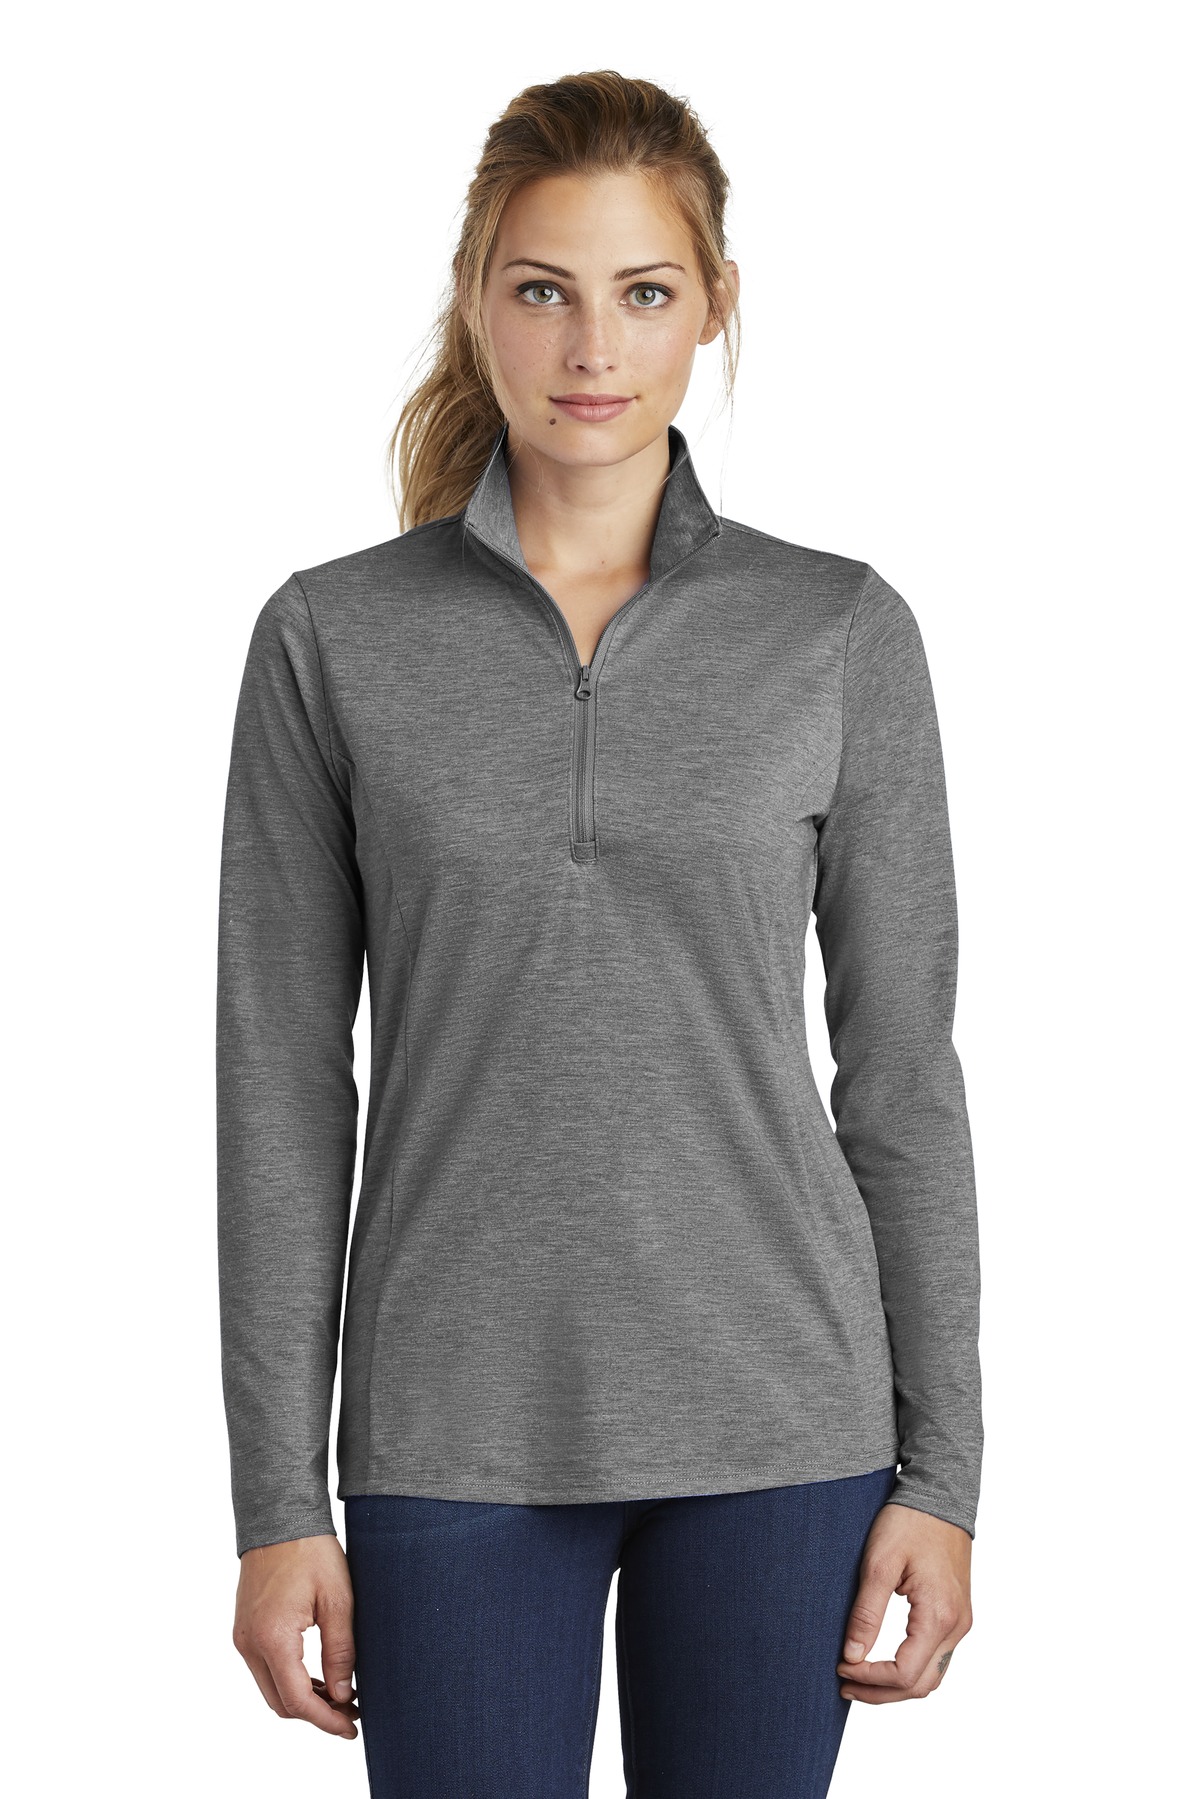 Sport-Tek Ladies Sweatshirts & Fleece for Hospitality ® Ladies PosiCharge ® Tri-Blend Wicking 1/4-Zip Pullover.-Sport-Tek